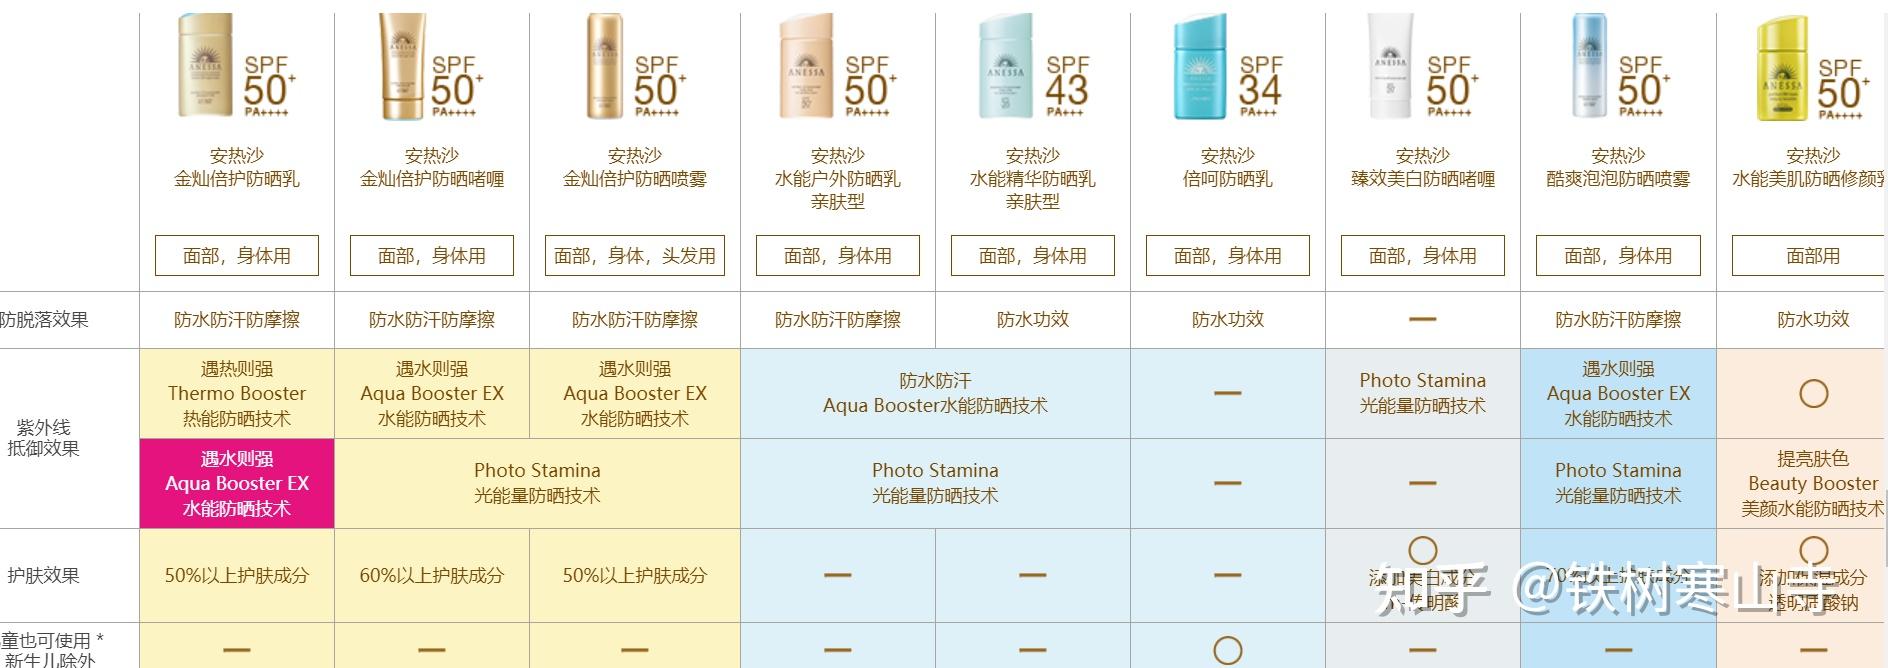 安热沙/安耐晒防晒霜全系列产品对比分析(安耐晒小金瓶,粉金瓶,小蓝瓶